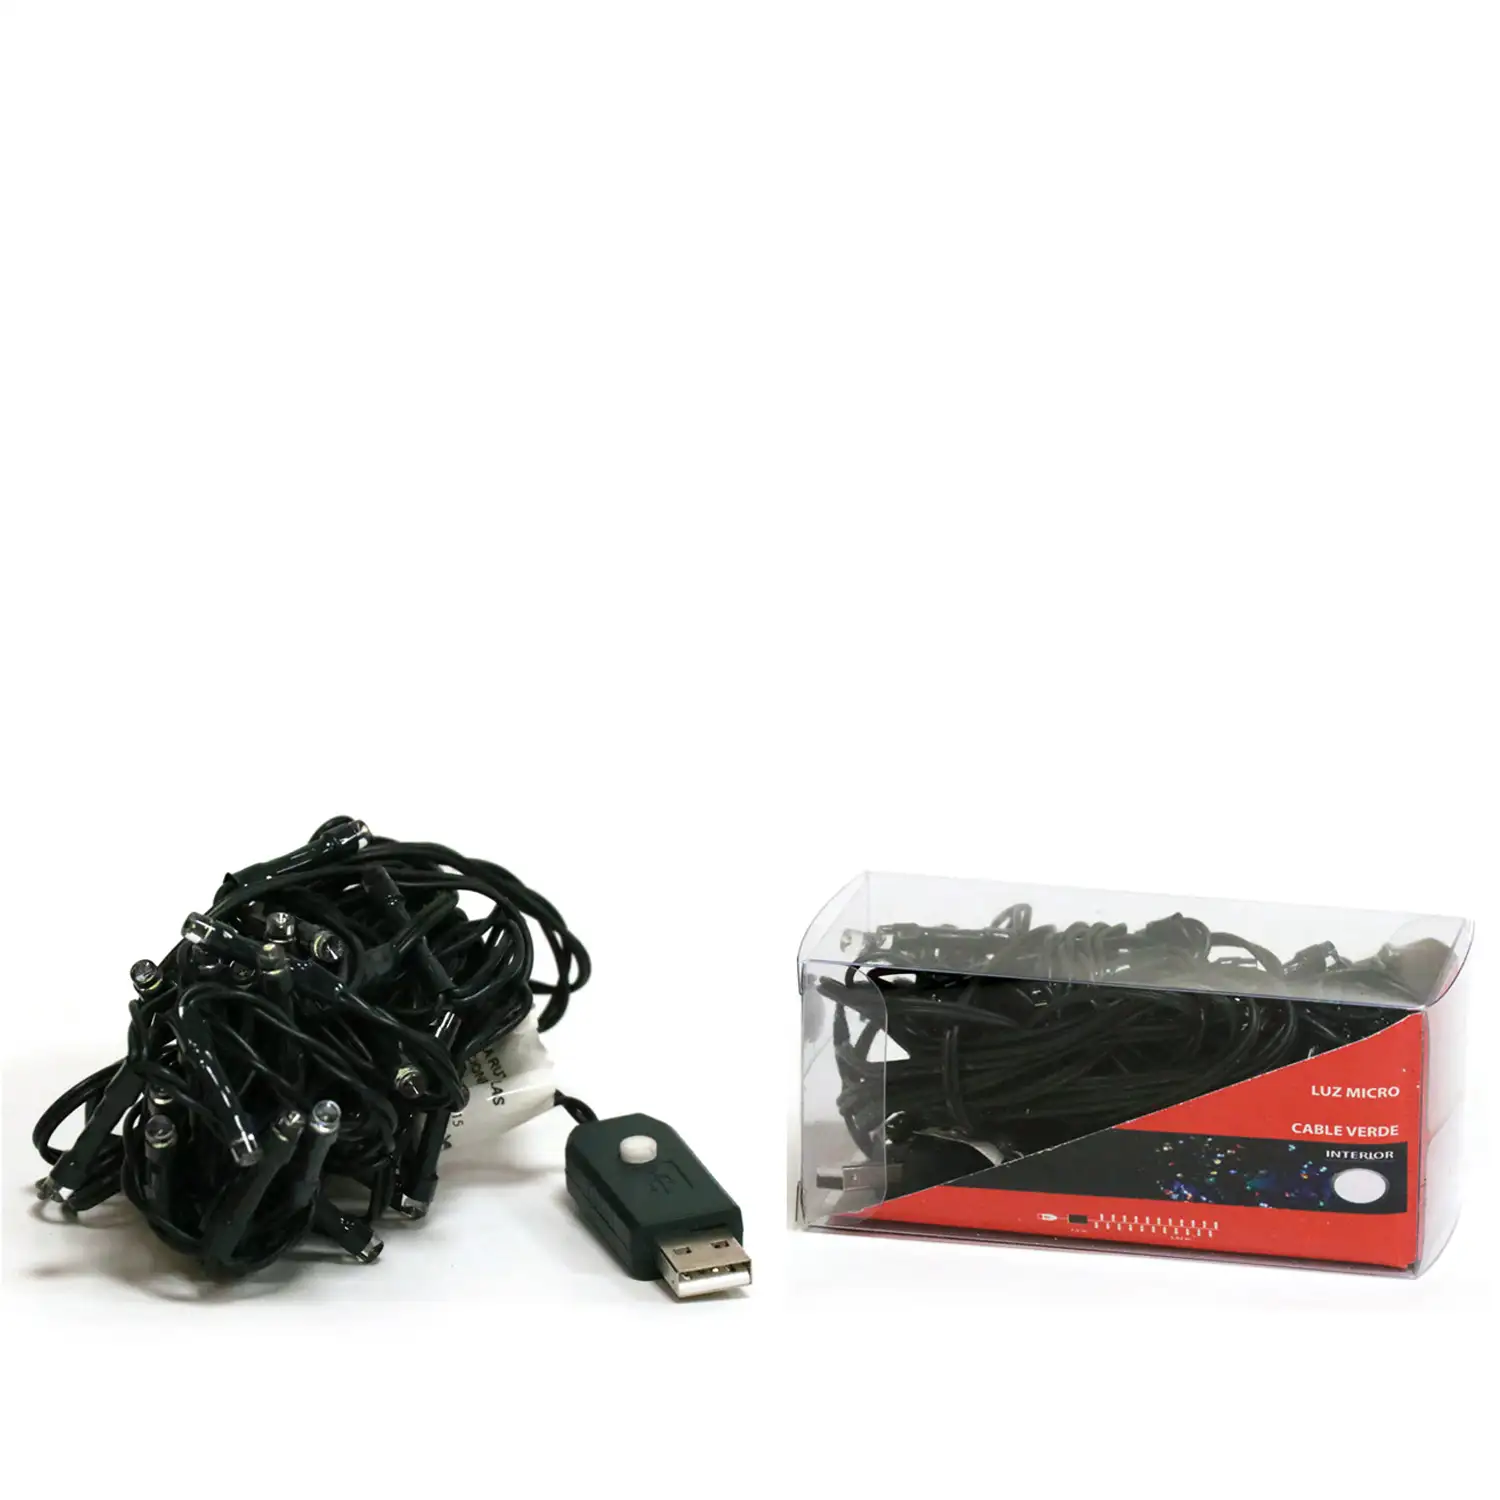 --LUCES MICRO 140L LED COLOR CON USB CABLE VERDE INTERIOR 11.15M (24)